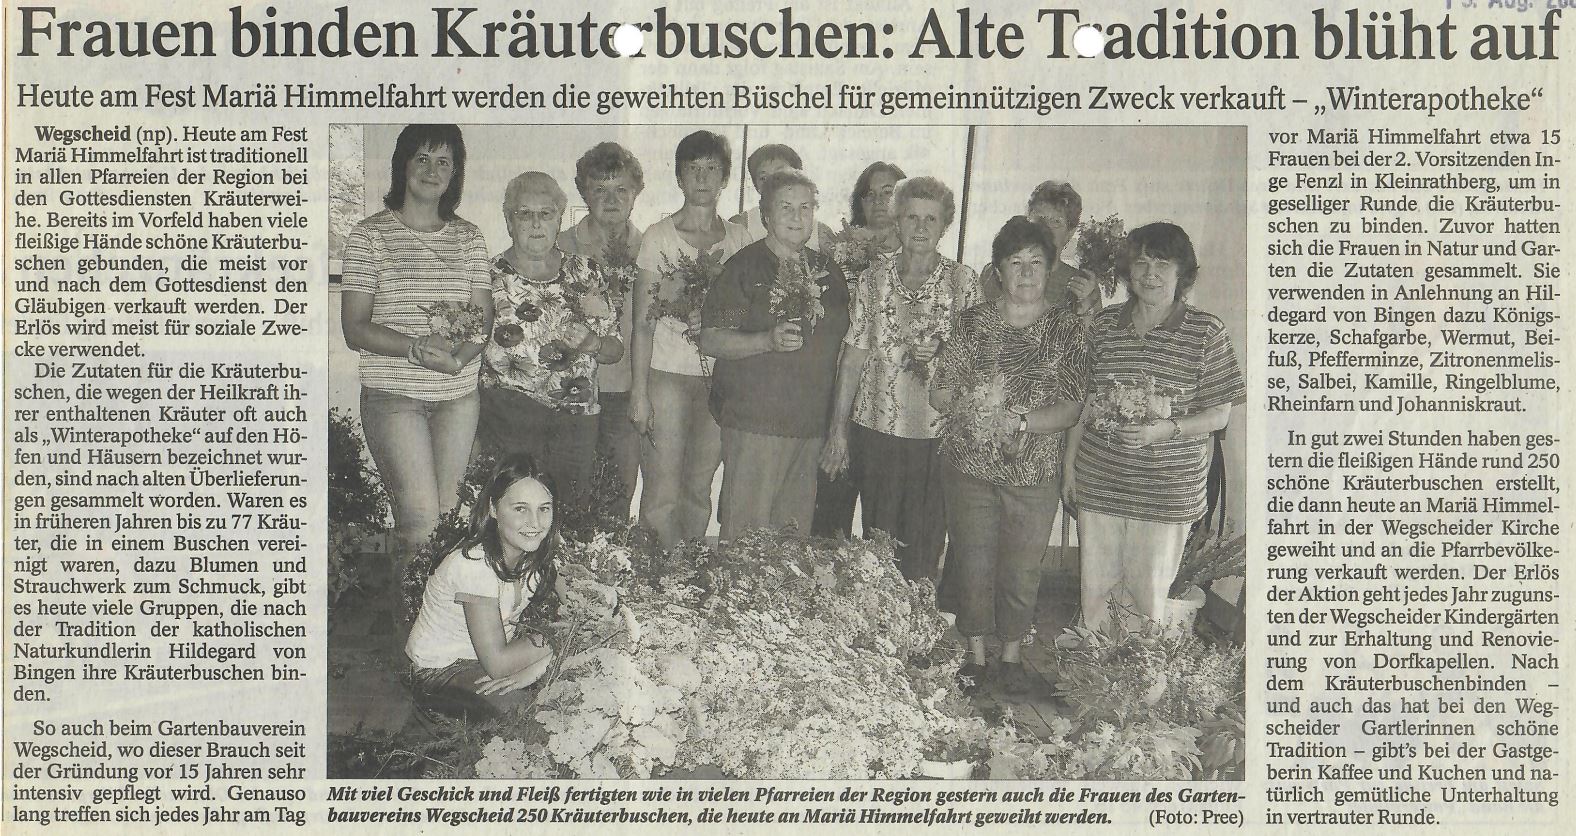 Frauen binden Kräuterbuschen: Alte Tradition blüht auf, Passauer Neue Presse vom 15. August 2007